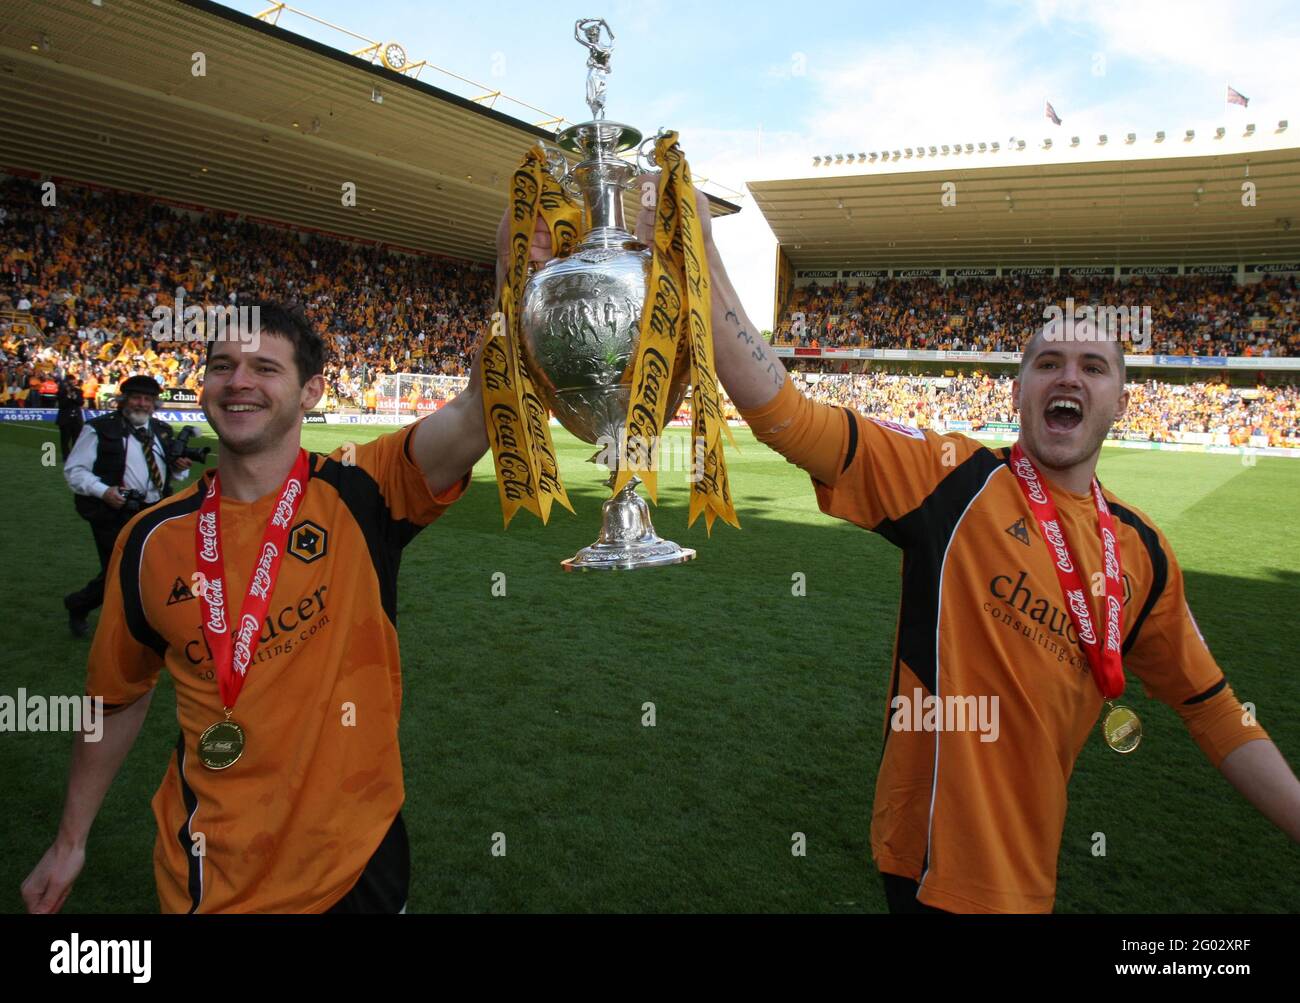 Foto del archivo fechada 03-05-2009 de Matt Jarvis (izquierda) de Wolverhampton Wanderers y Michael Kihtly con el Trofeo del Campeonato de la Liga de Fútbol. Fecha de emisión: Lunes 31 de mayo de 2021. Foto de stock